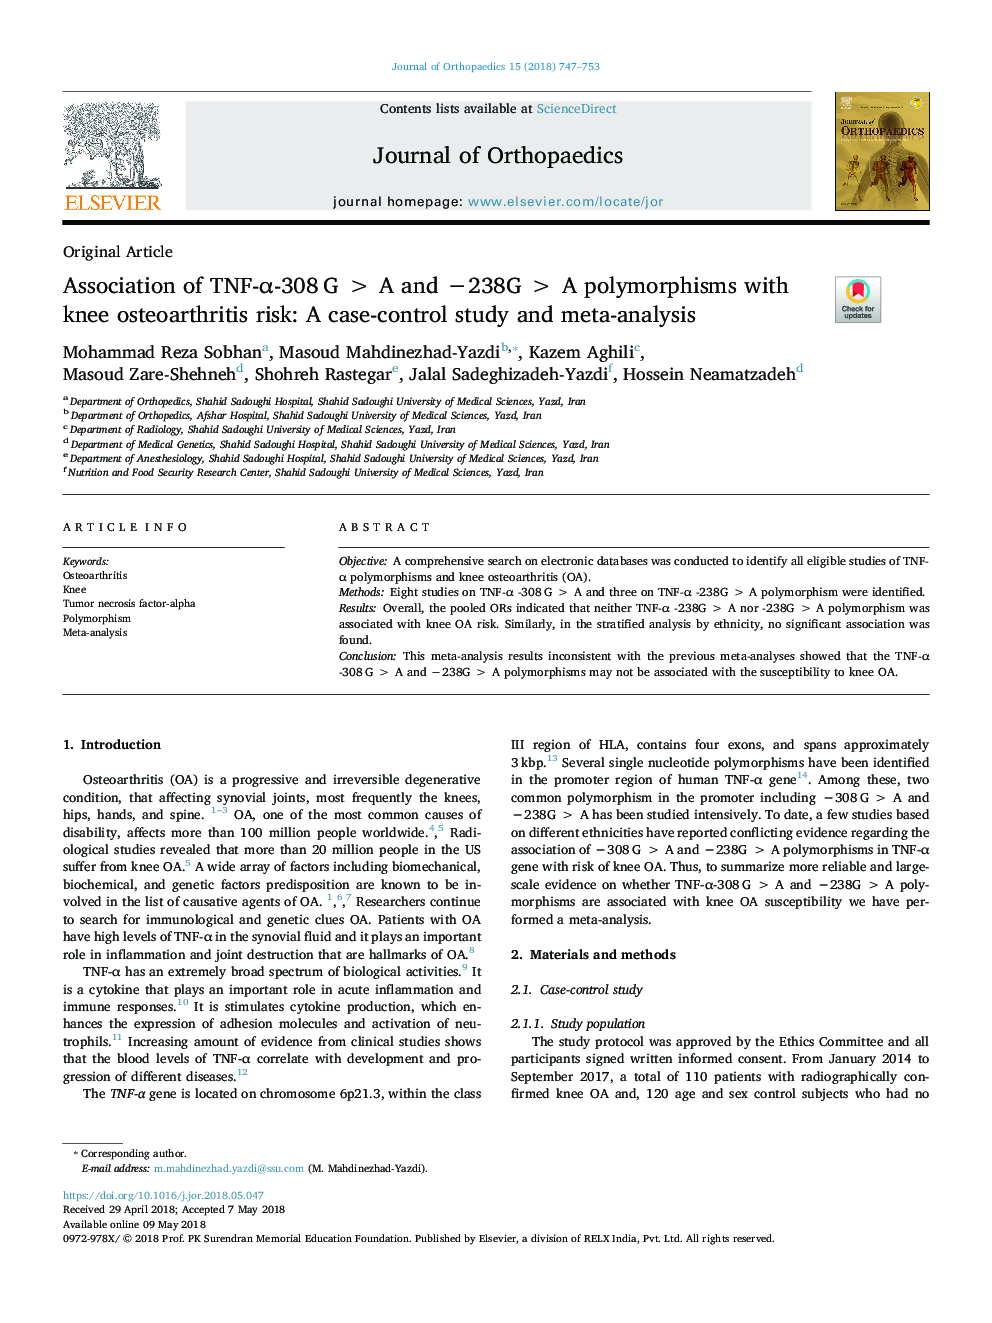 Association of TNF-Î±-308â¯Gâ¯>â¯A and â238Gâ¯>â¯A polymorphisms with knee osteoarthritis risk: A case-control study and meta-analysis